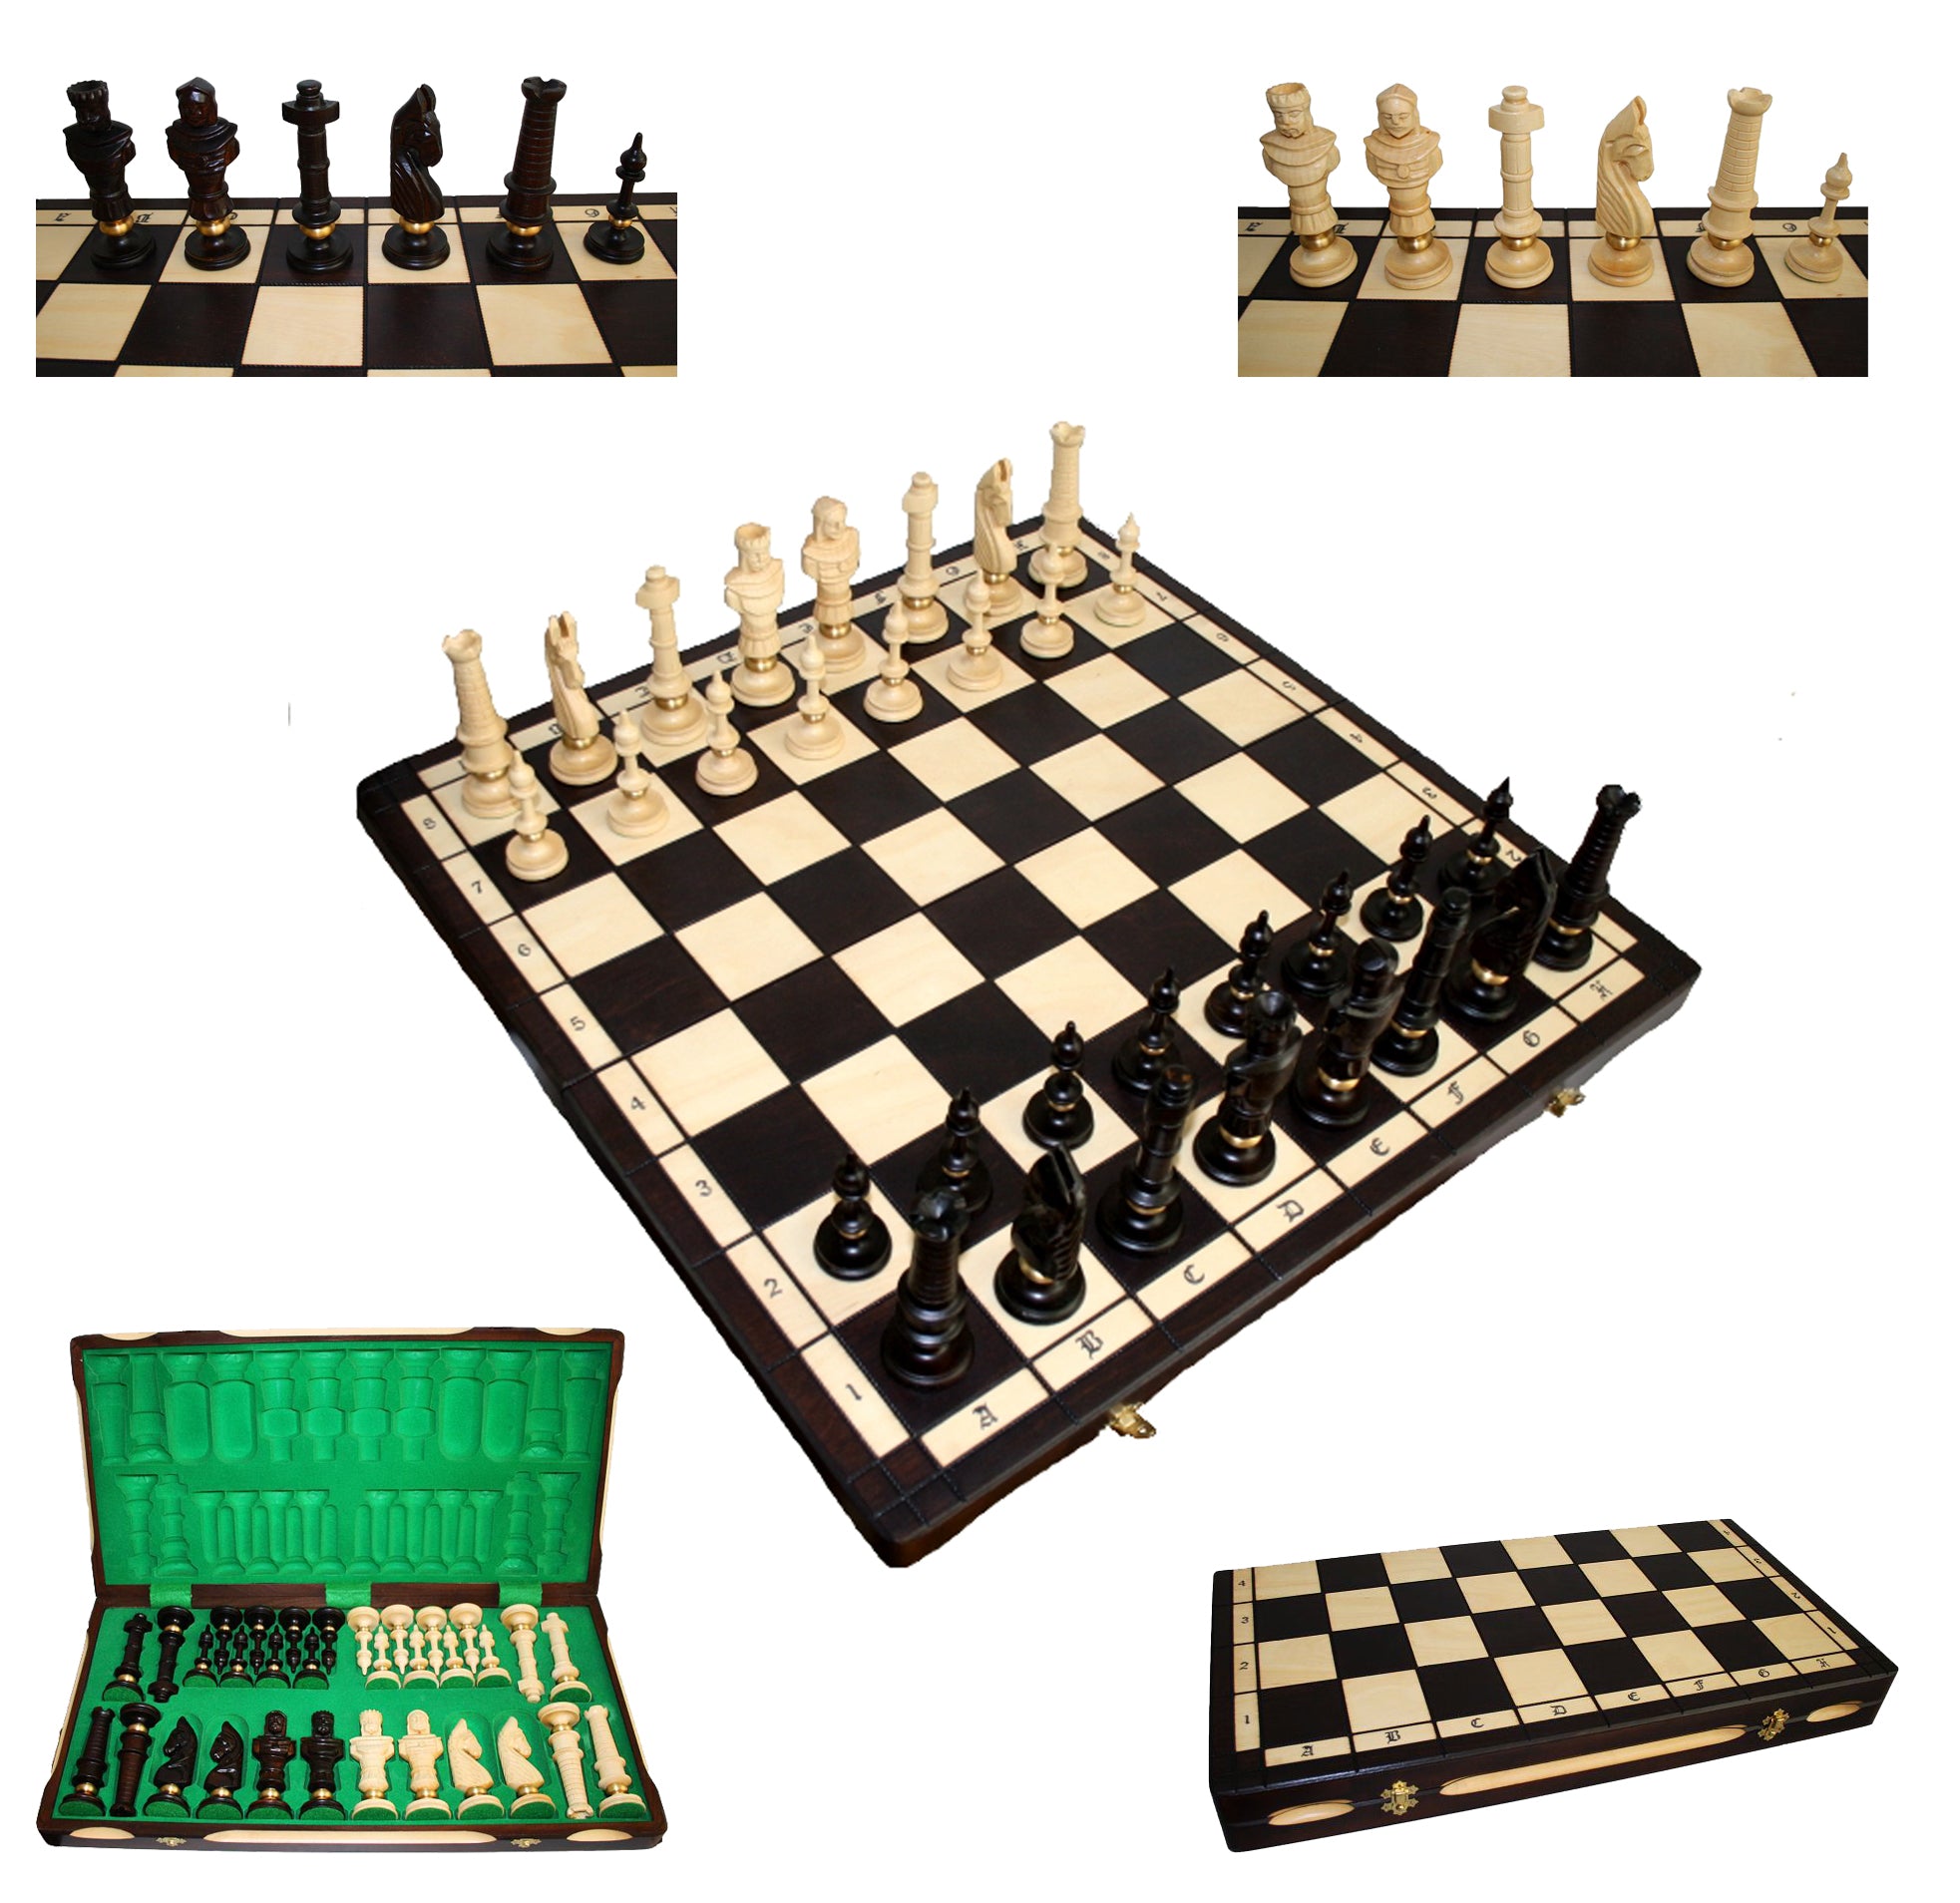 Schach mit handgeschnitzten Figuren, Nr. 104 aus Holz, Schachspiel 65x